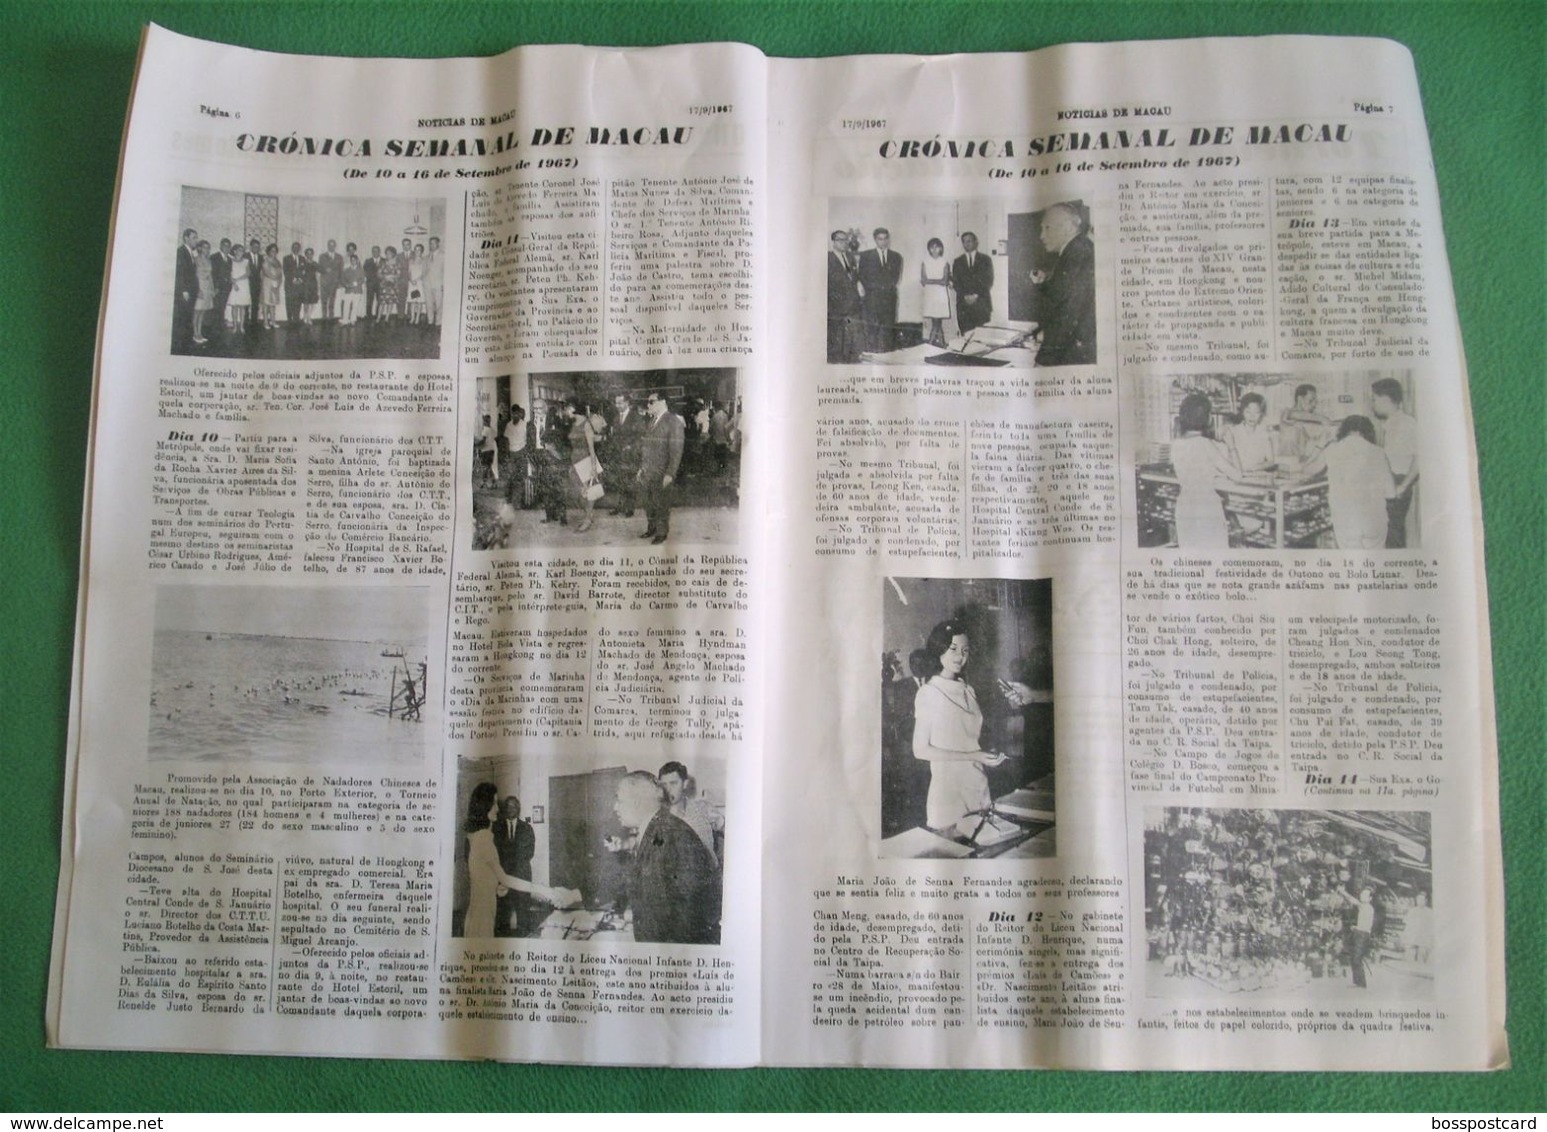 Macau - Jornal Notícias De Macau Nº 698, 17 De Setembro De 1967 - Imprensa - Macao - Portugal China - General Issues